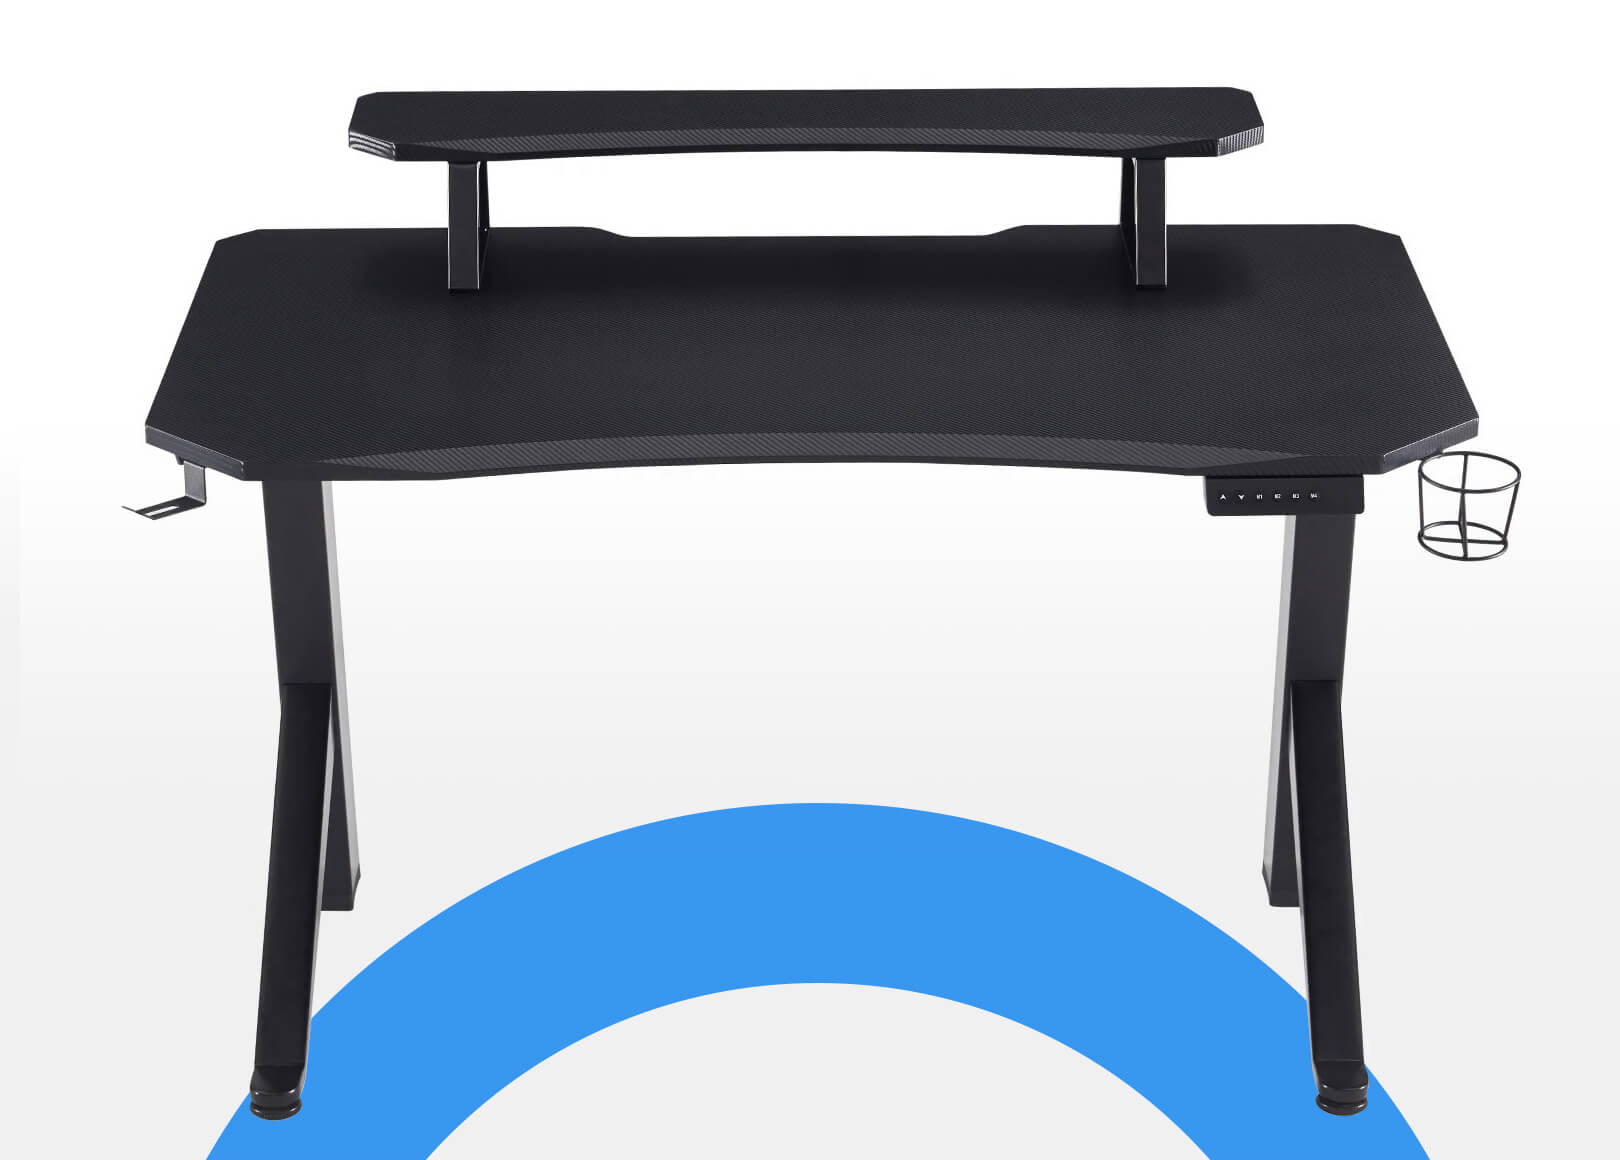 Uitstekend scheuren collegegeld Sunaofe Challenger : Gaming Standing Desk | Sleek Design | Small Space